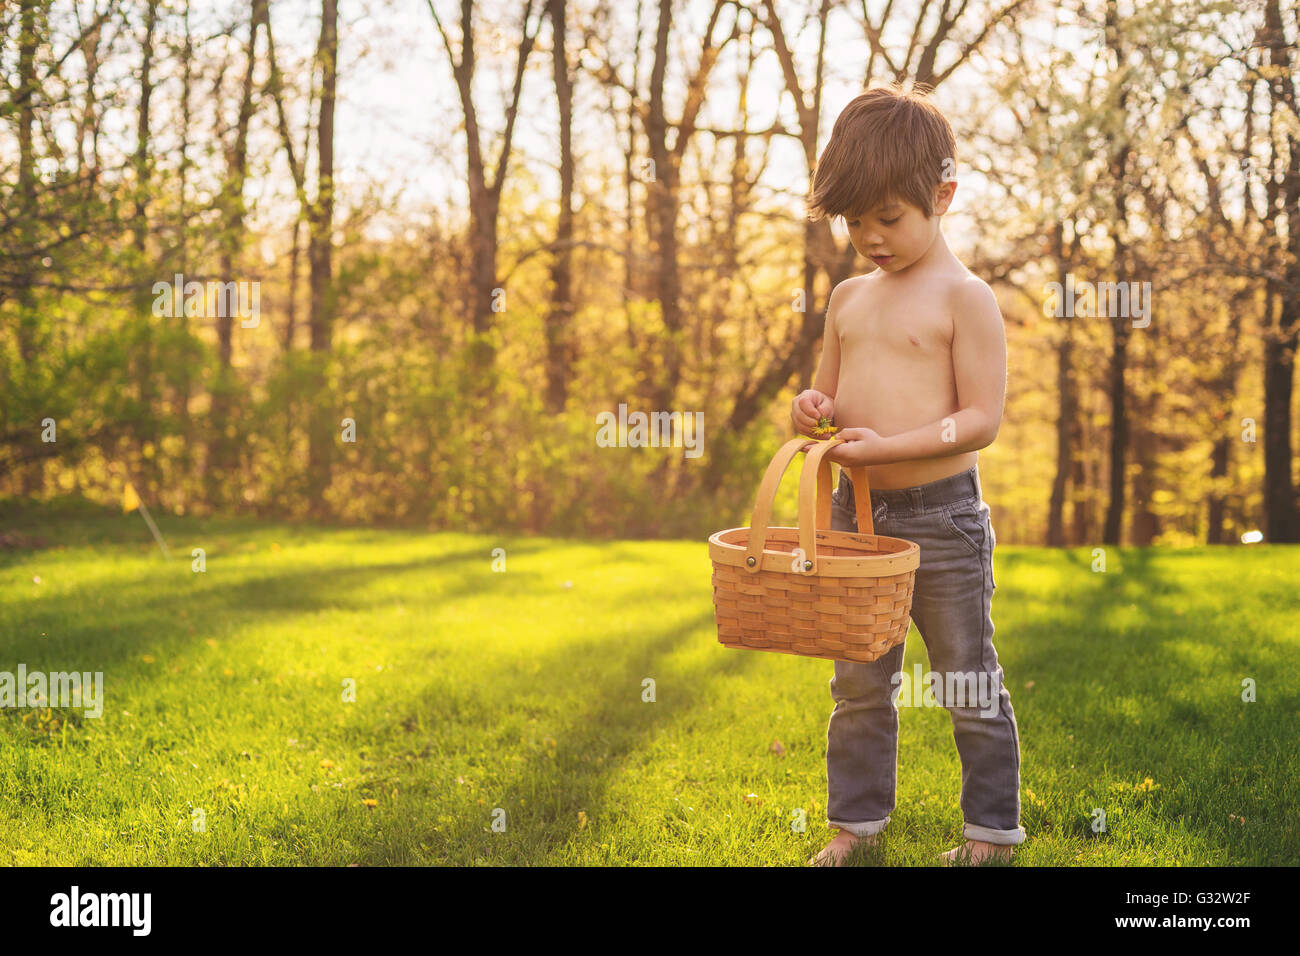 Junge mit Korb sammeln Blumen Stockfoto